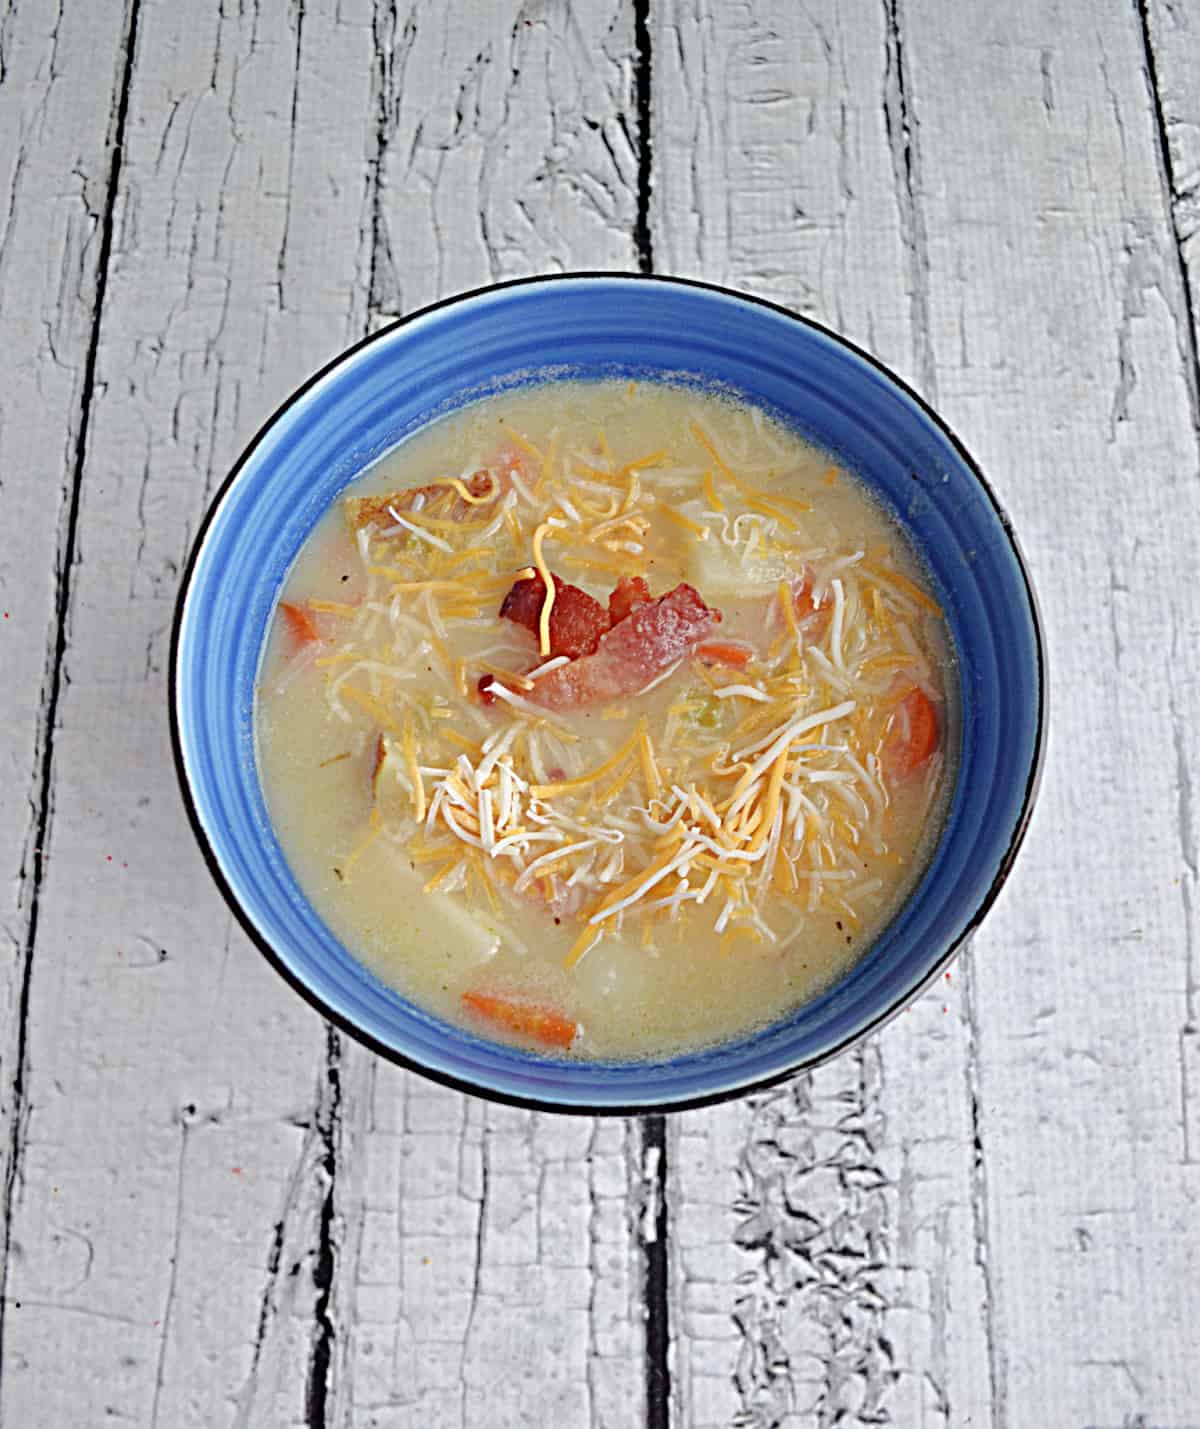 A bowl of creamy potato soup.